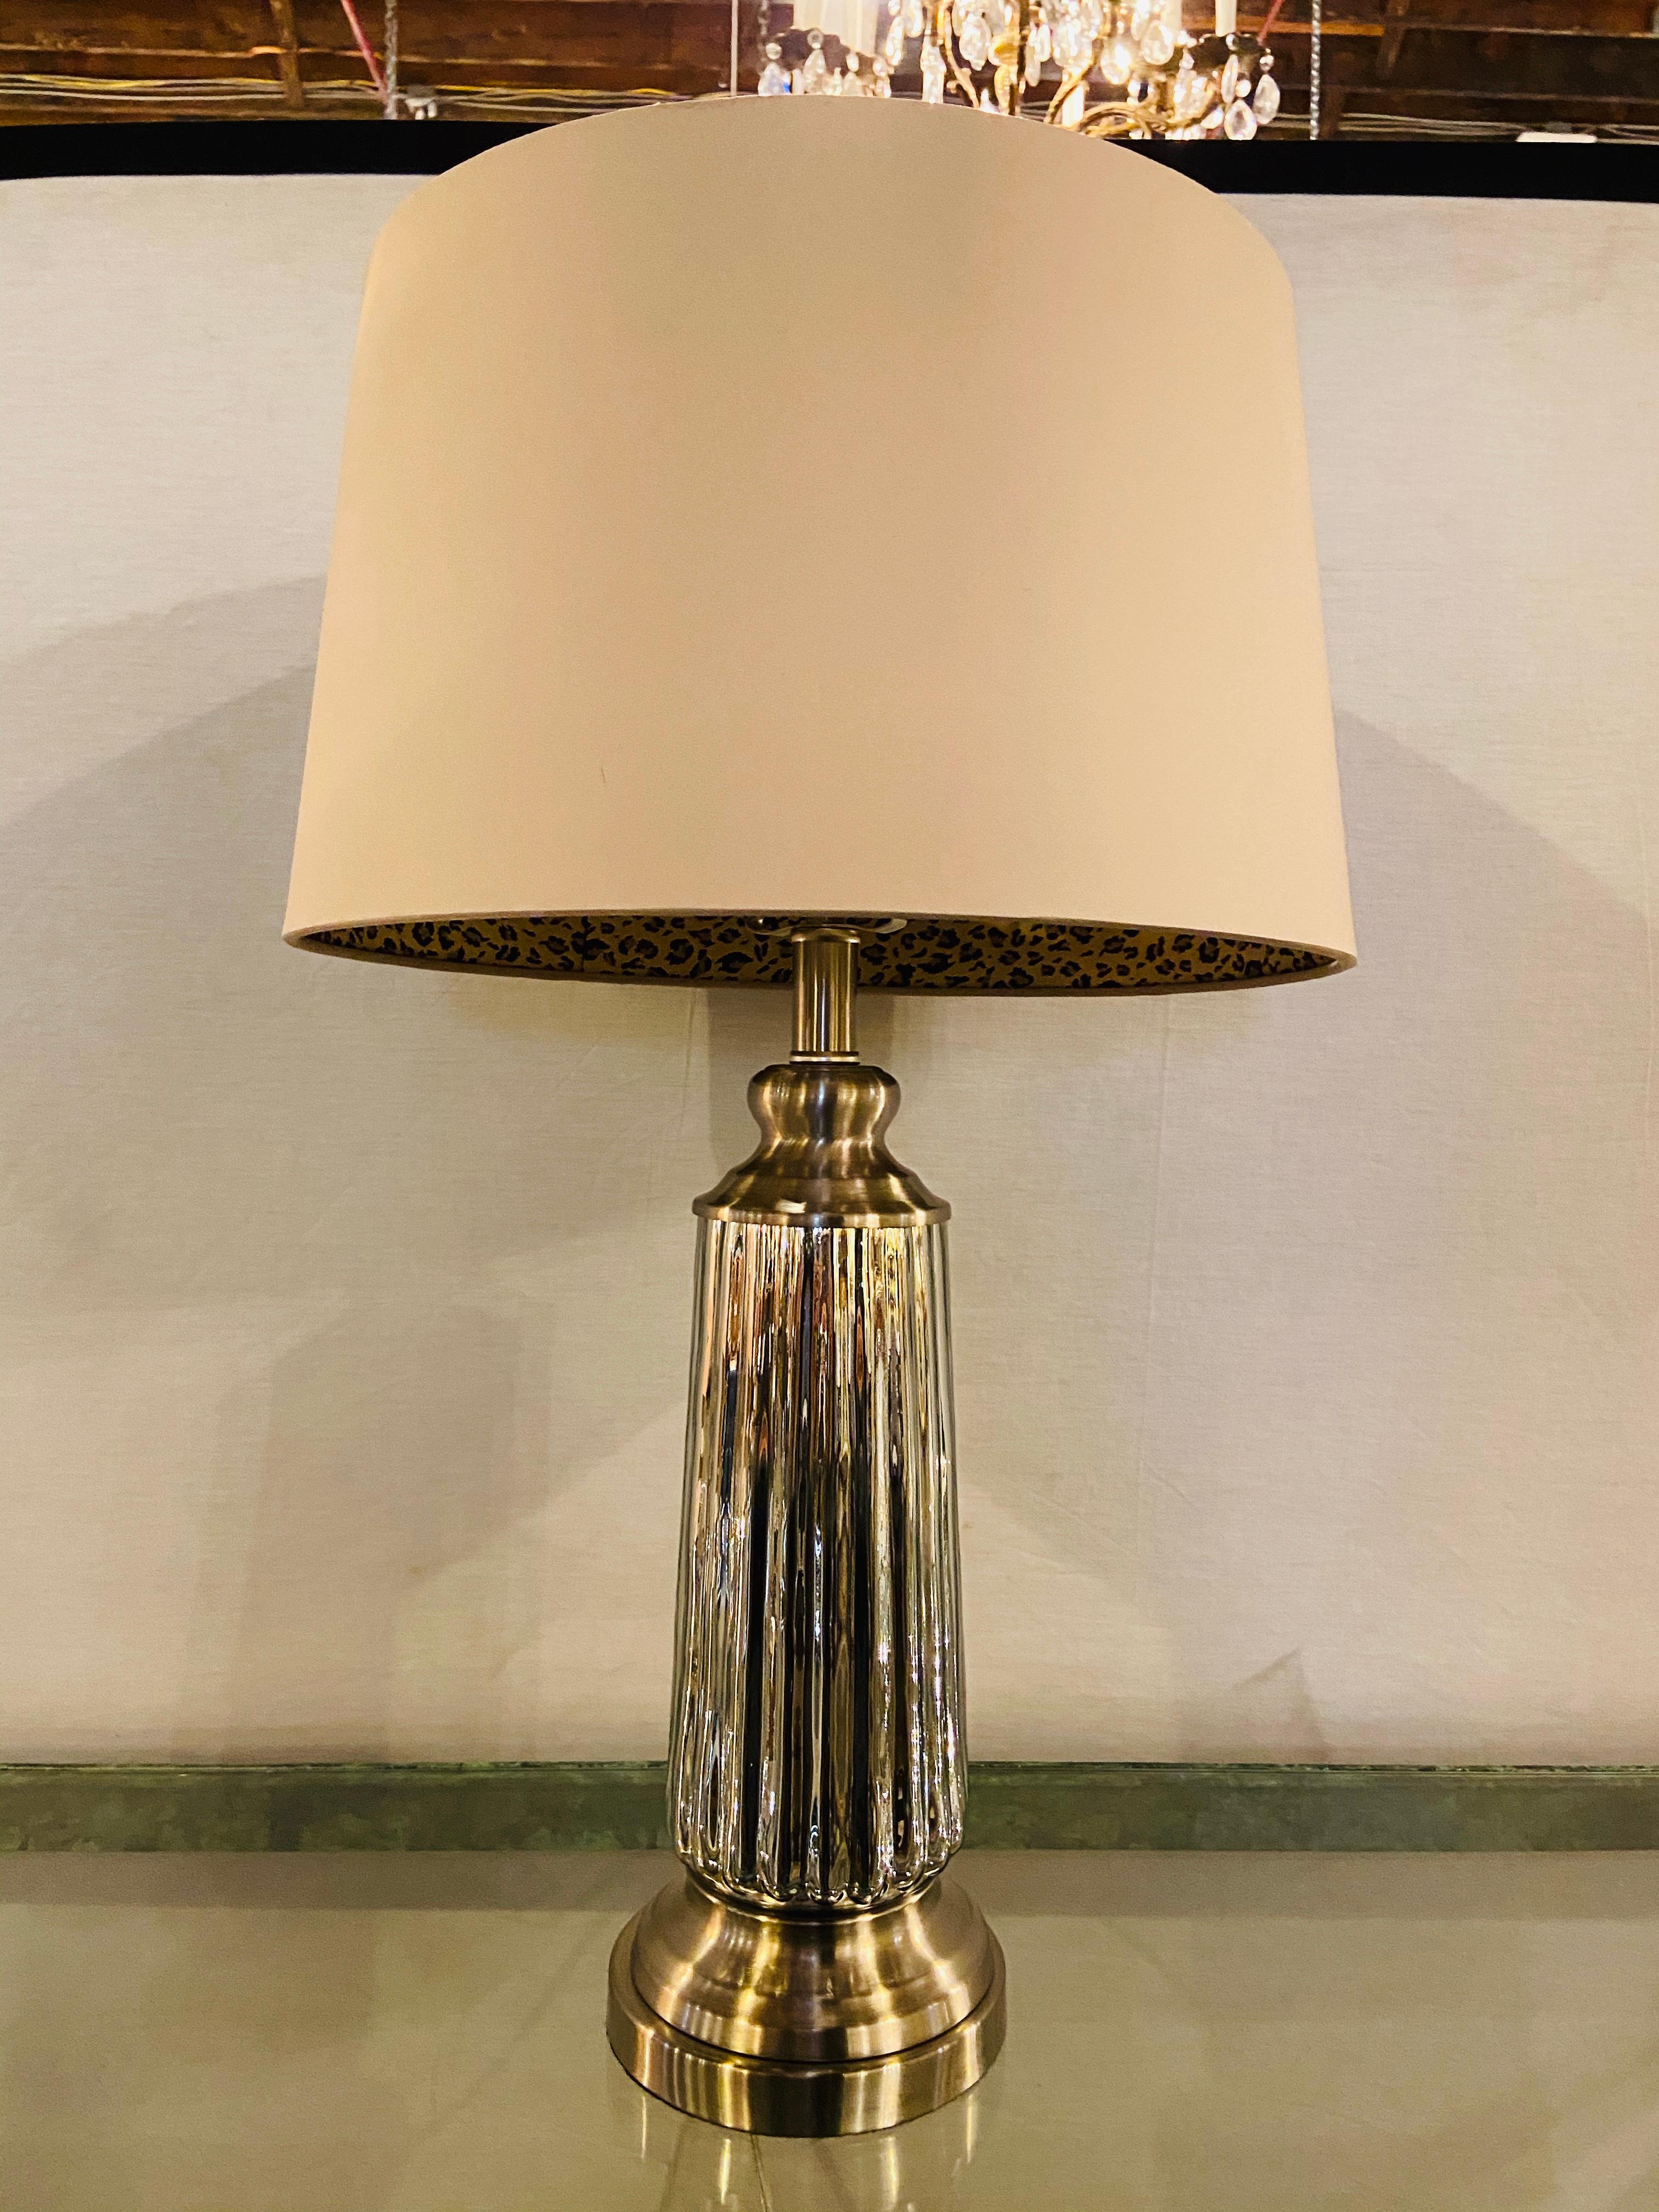 Une lampe de table simple et chic de style Mid Century Modern.  La lampe de couleur argentée présente un design nervuré et est agrémentée d'un abat-jour personnalisé  intérieur à motif léopard.

Dimensions :
La lampe mesure 26